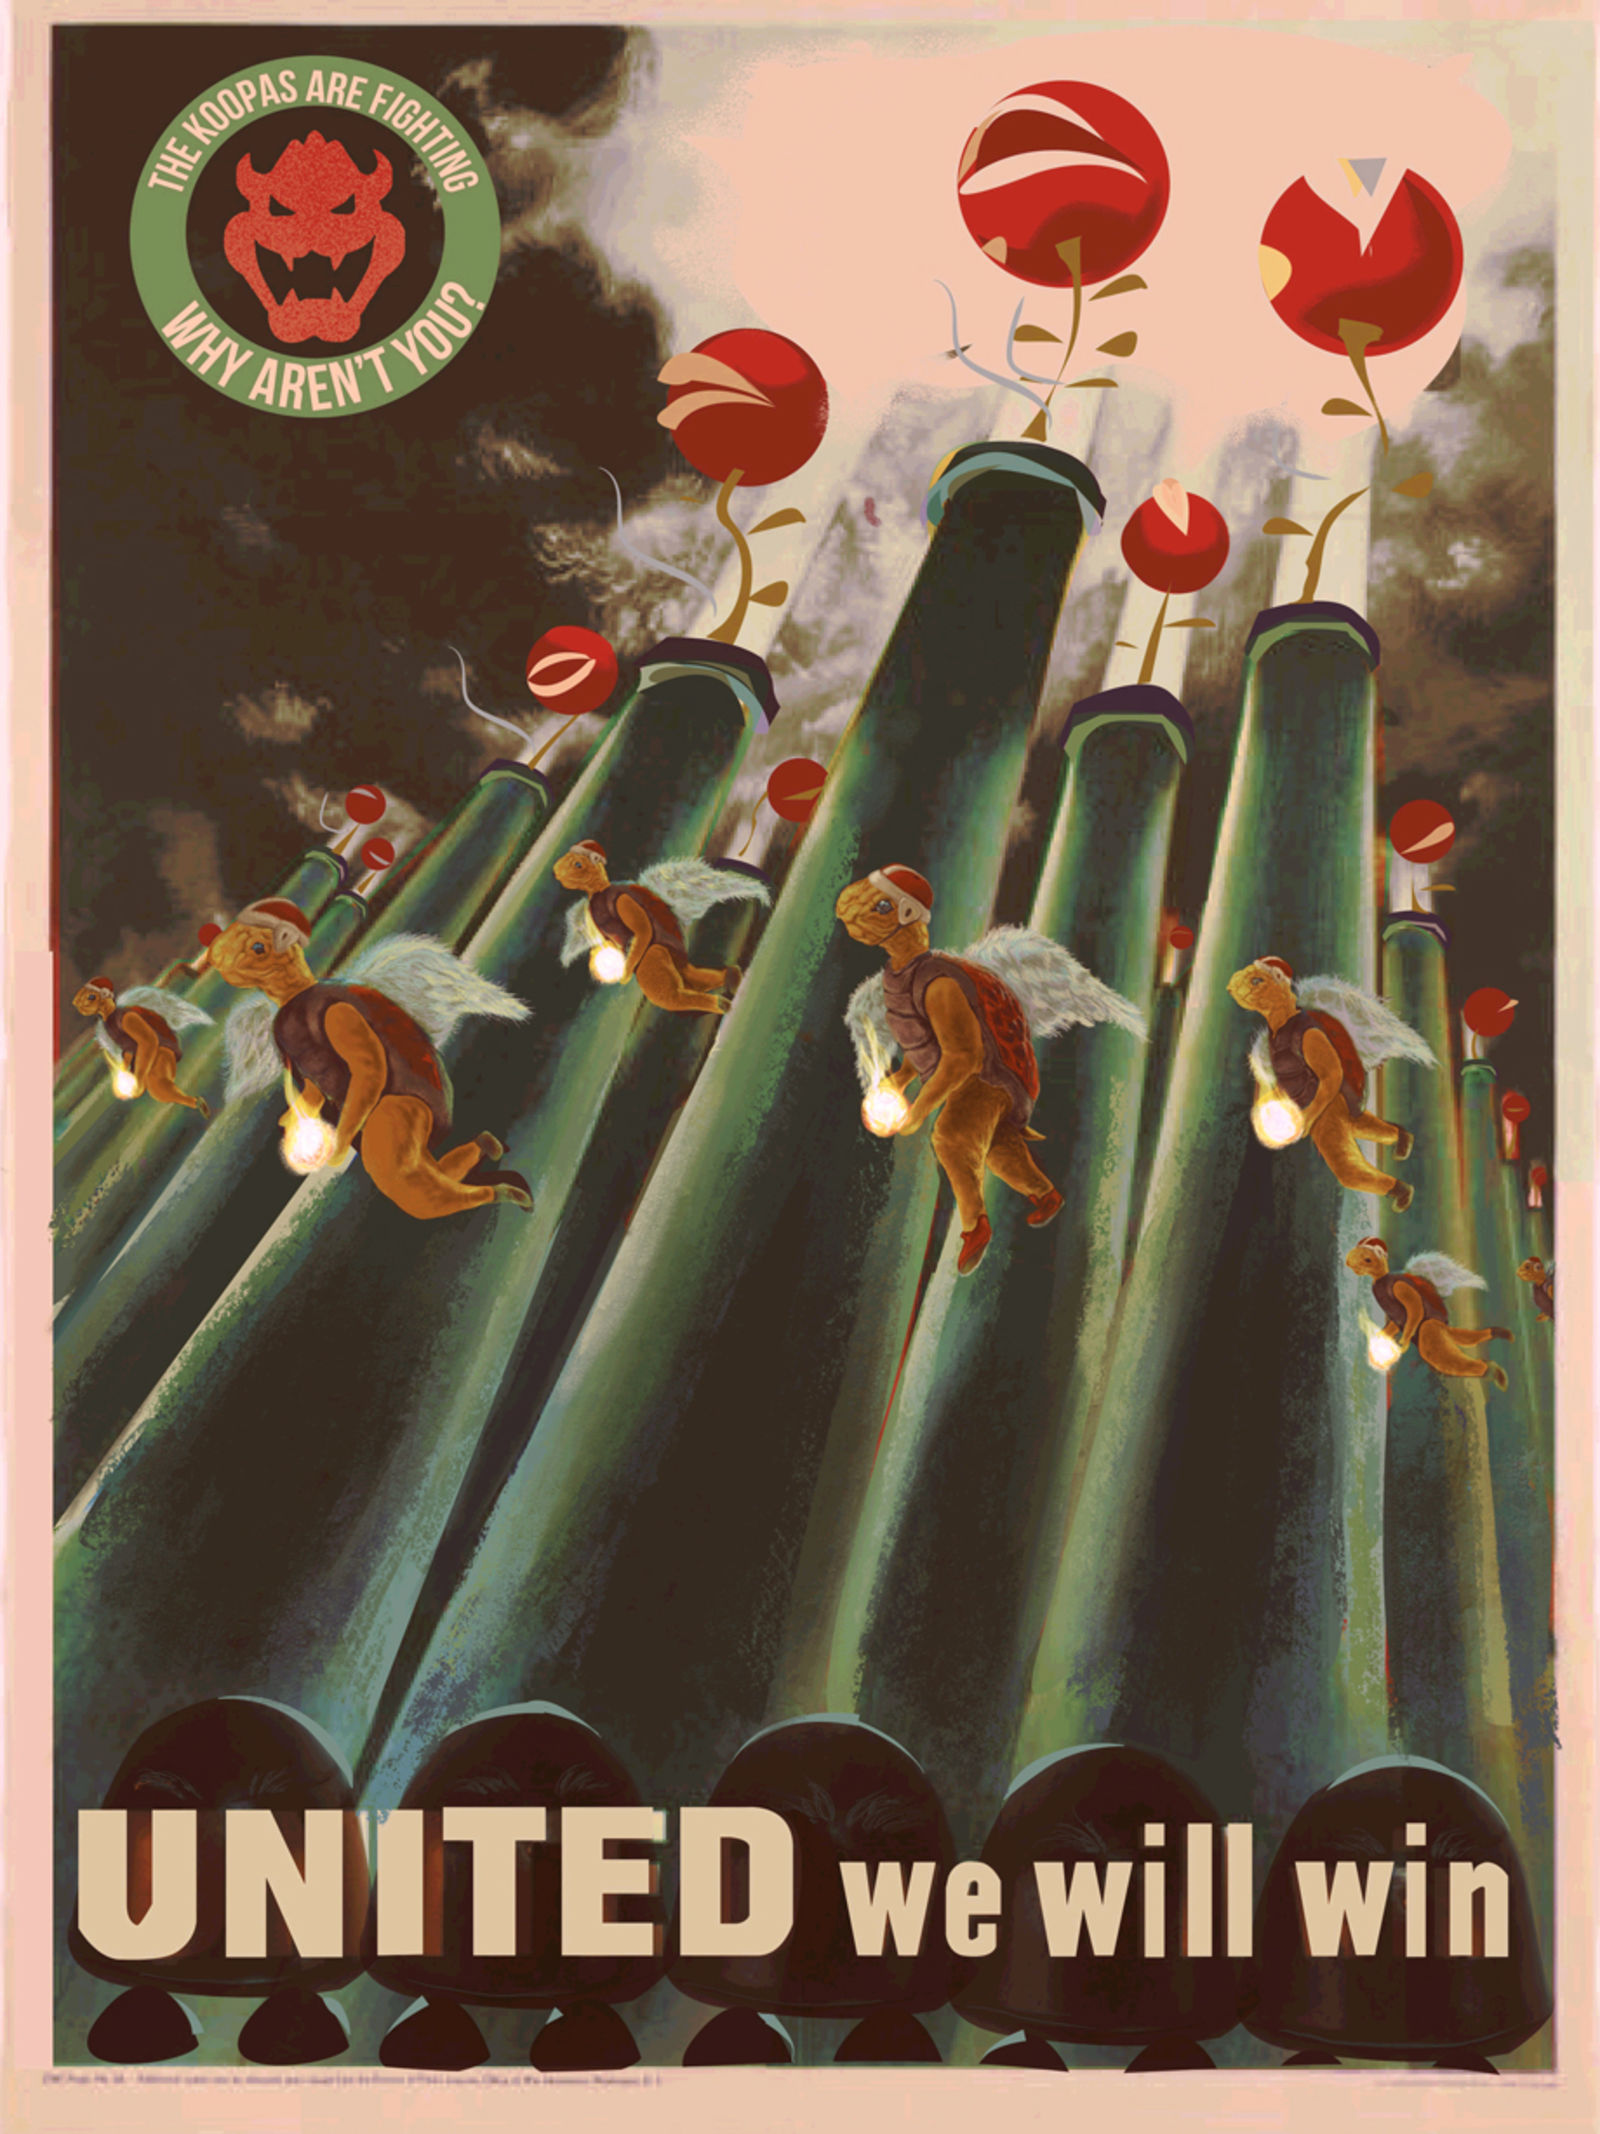 游戏角色乱入二战海报 国外原画师精彩作品画风独特